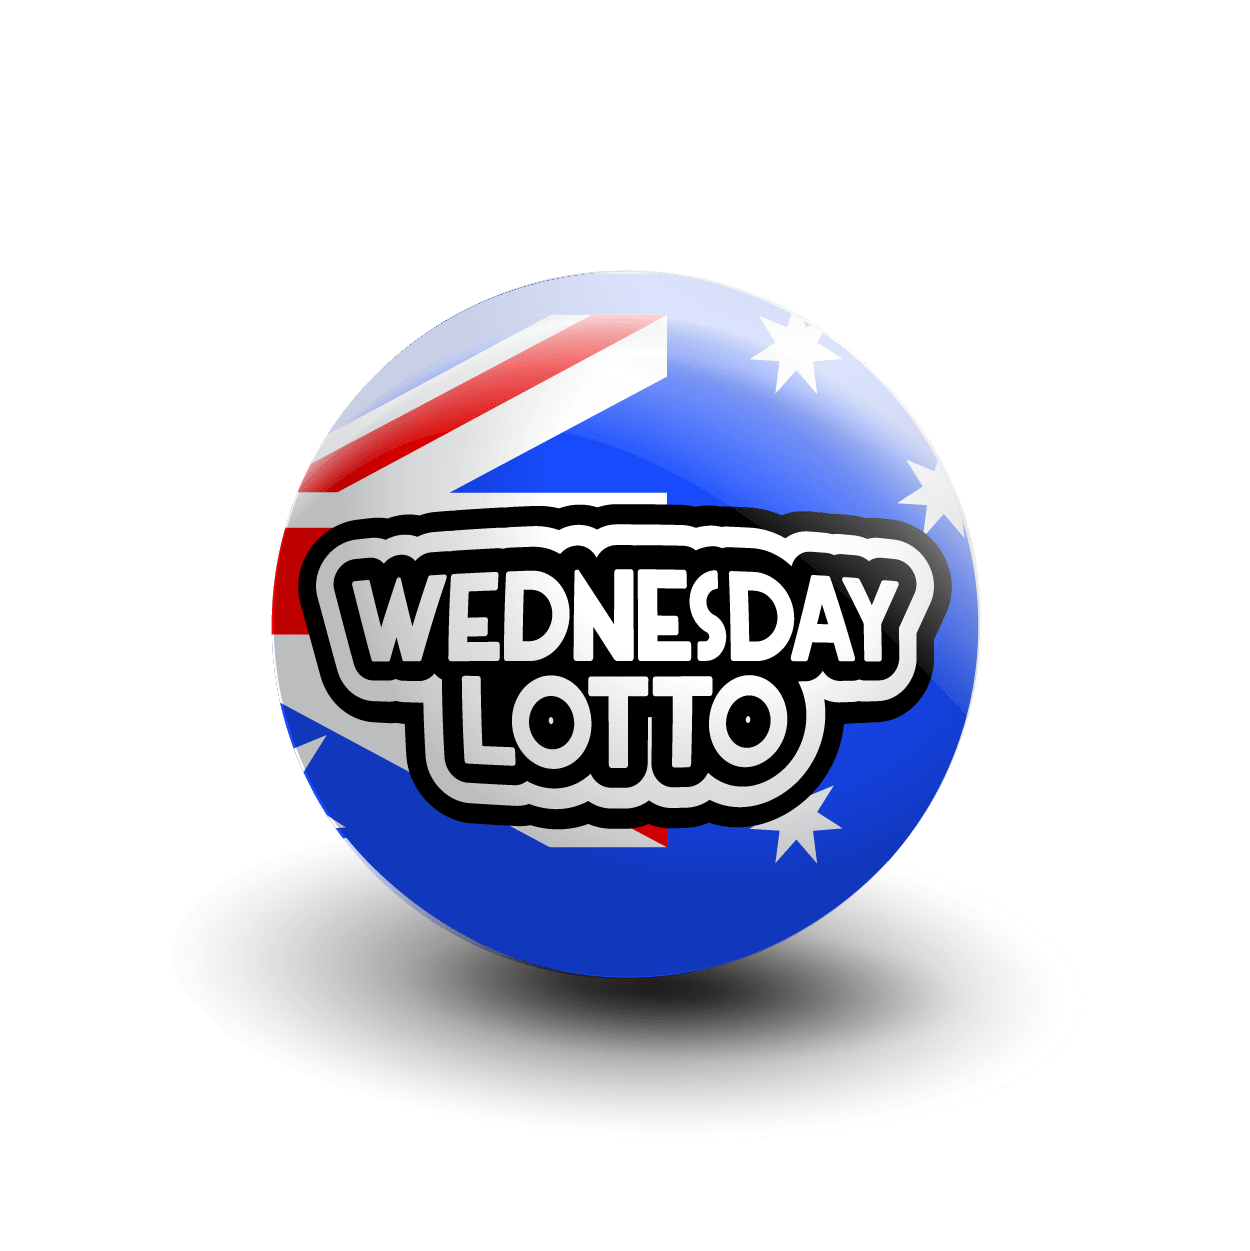 Wednesday lotto